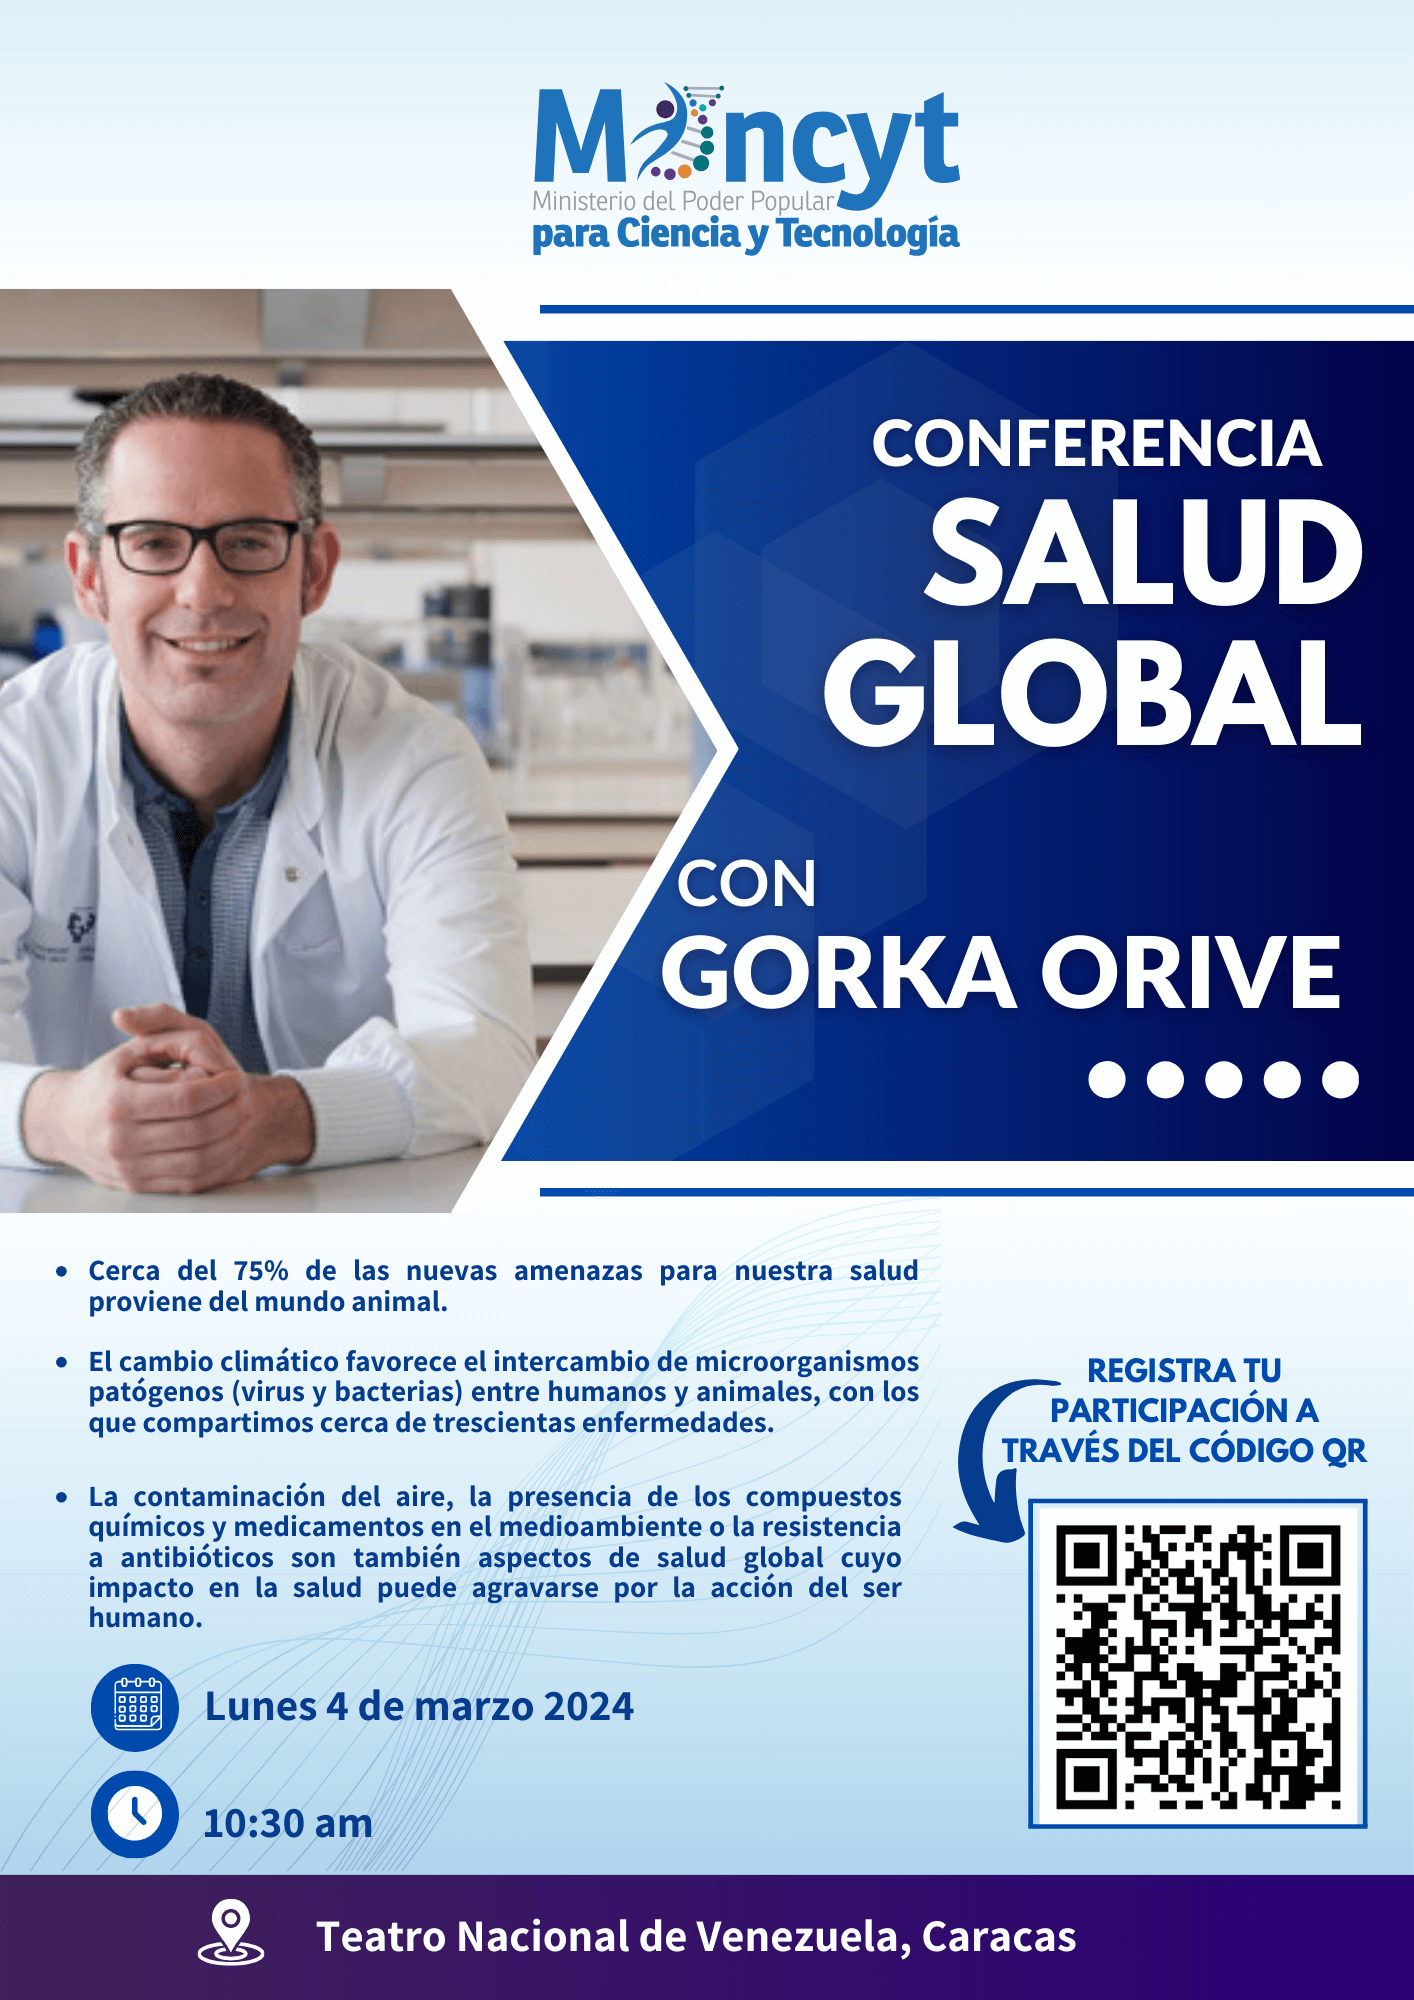 Dr. Gorka Orive dictará conferencia “Salud Global” en el Teatro Nacional de Caracas